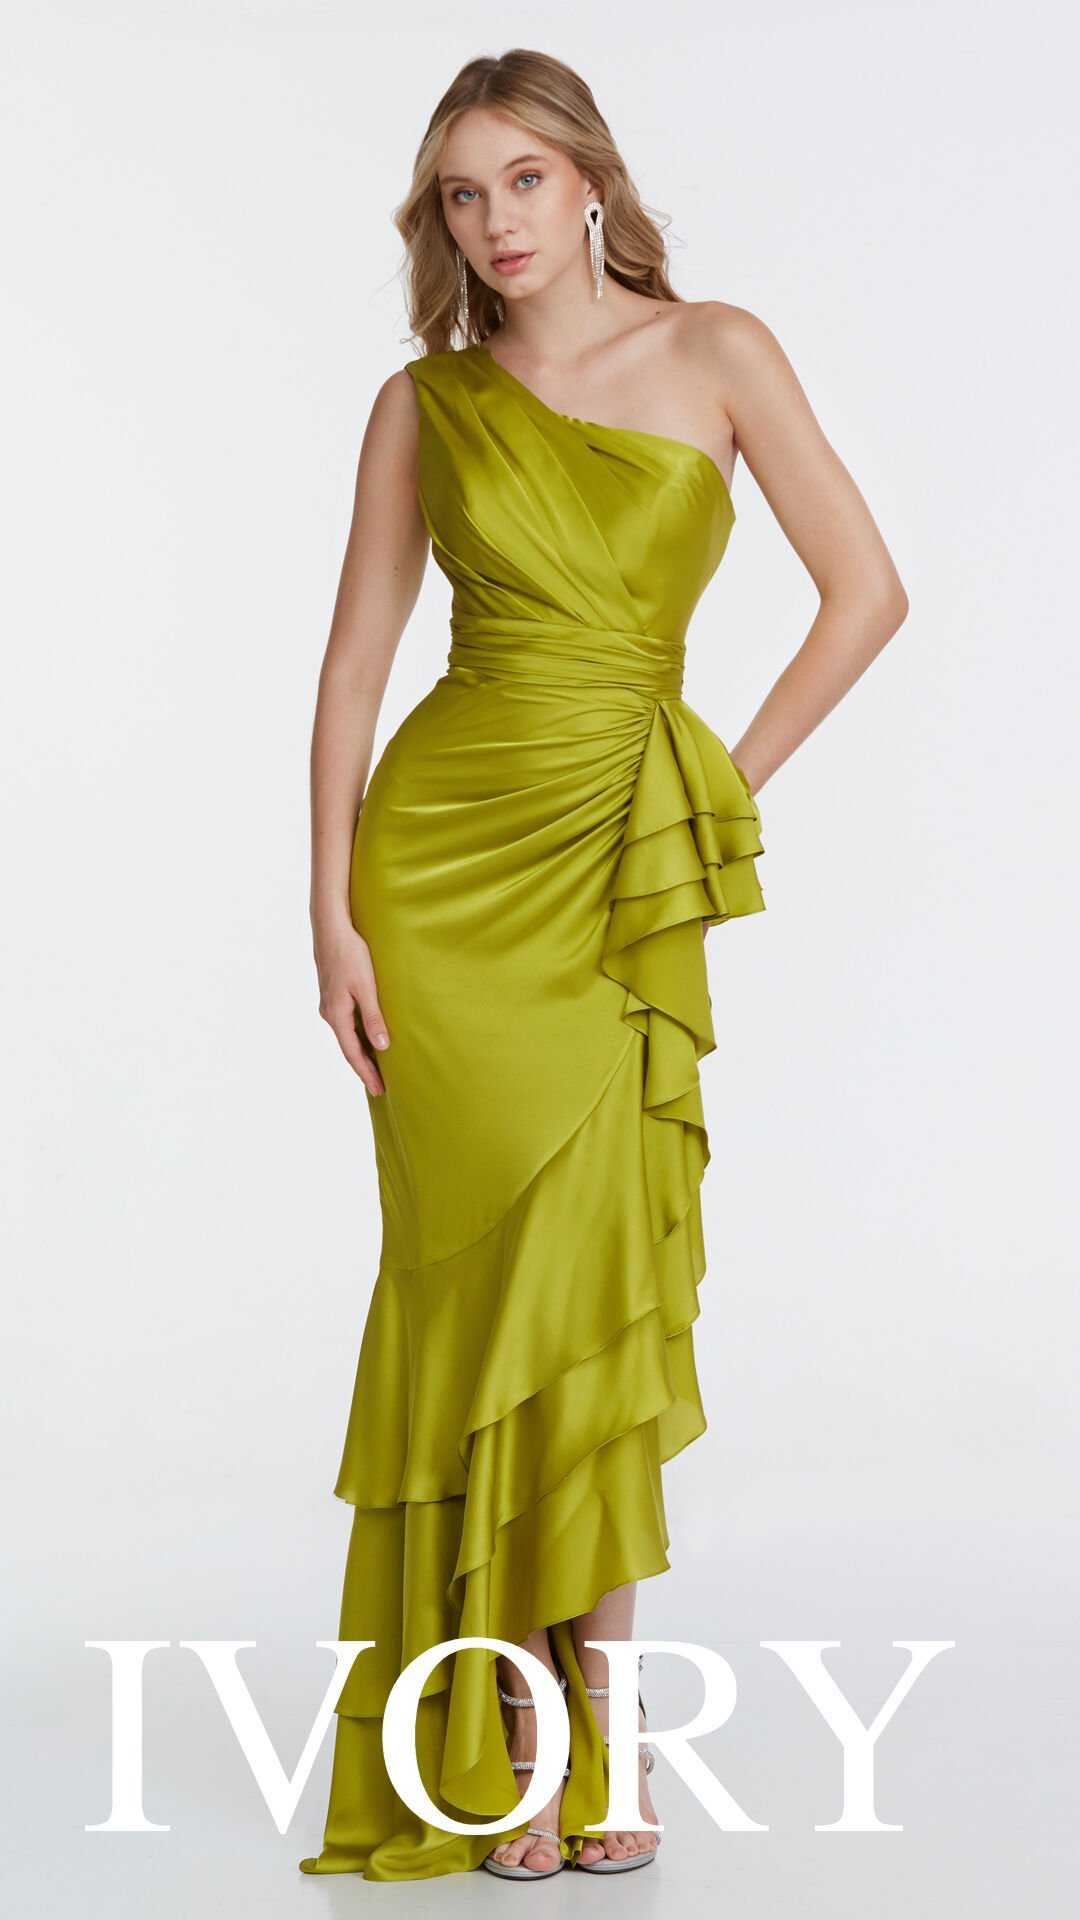 Frau mit einem elegante grünen Abendkleid